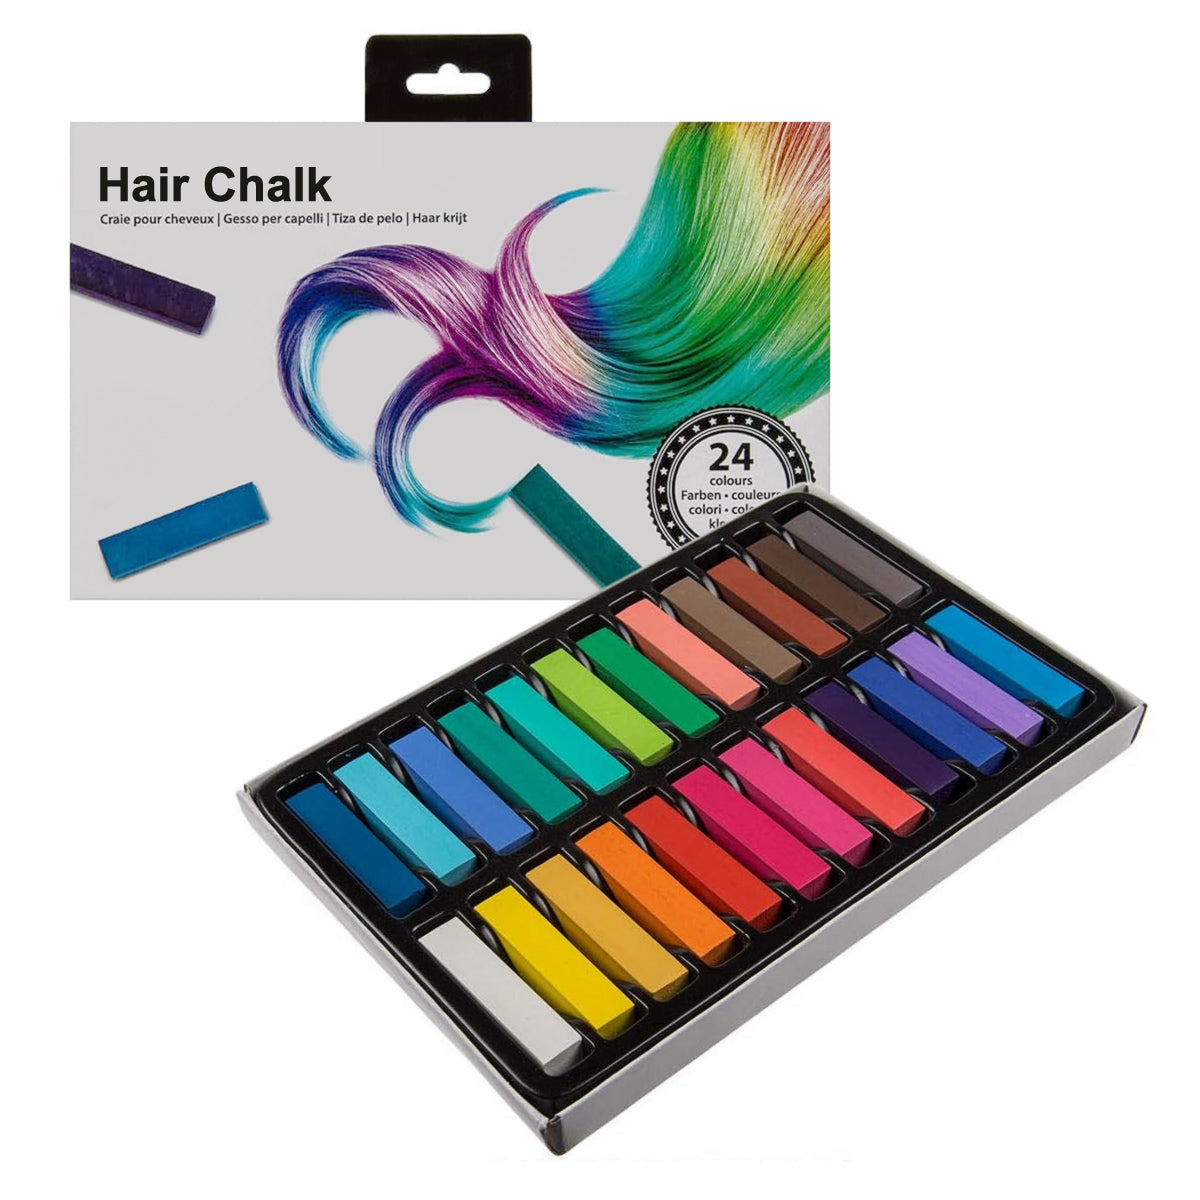 Hair Chalk - 24 Colours